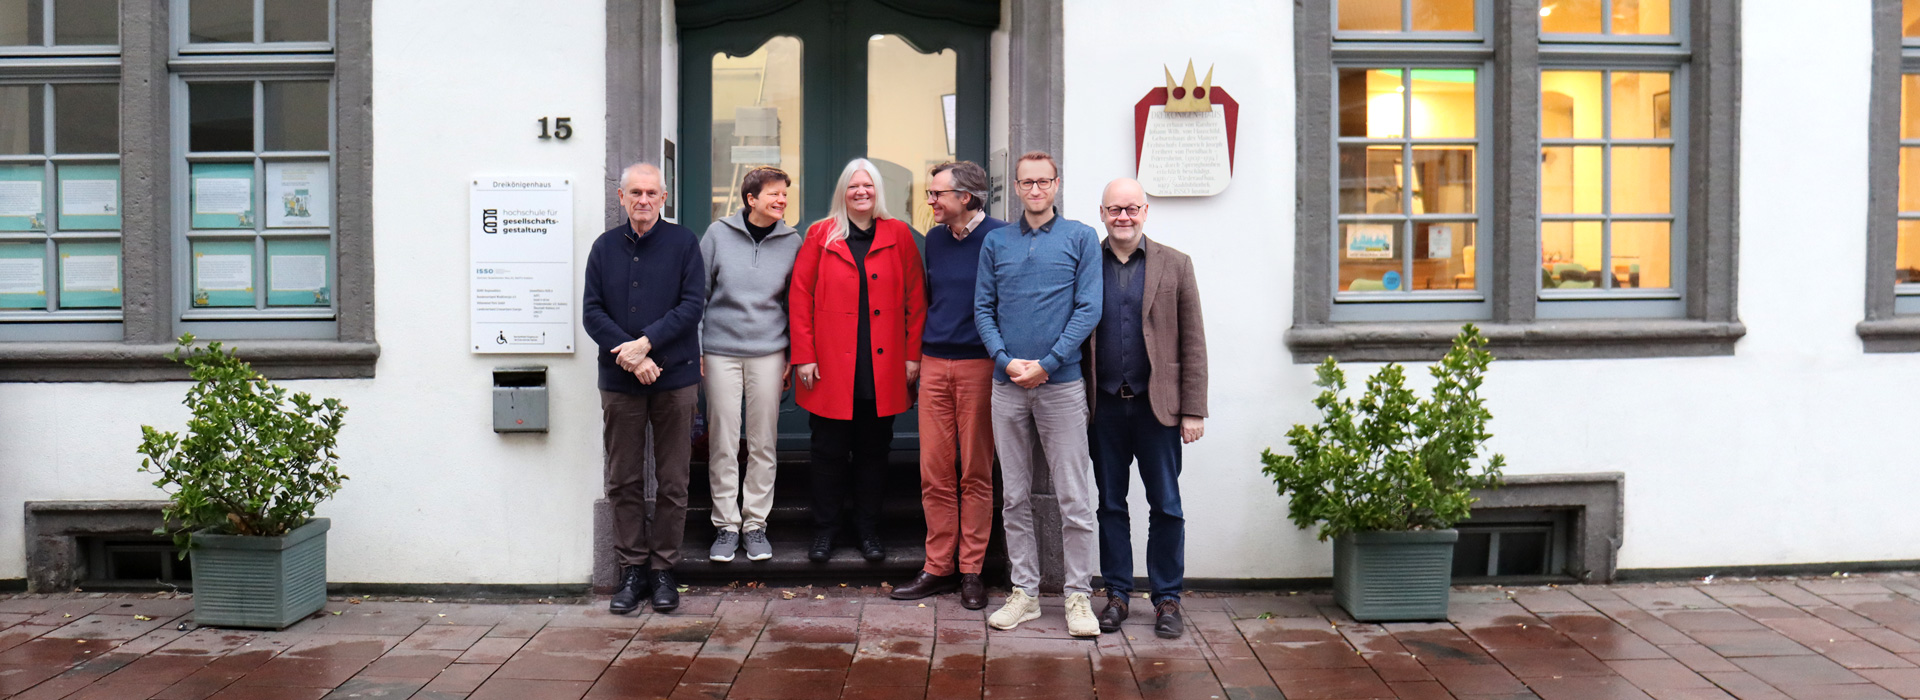 Von links nach rechts: Walter Ötsch, Silja Graupe, Daniela Gottschlich, Oliver Schlaudt, Lars Hochmann, Stephan Panther.